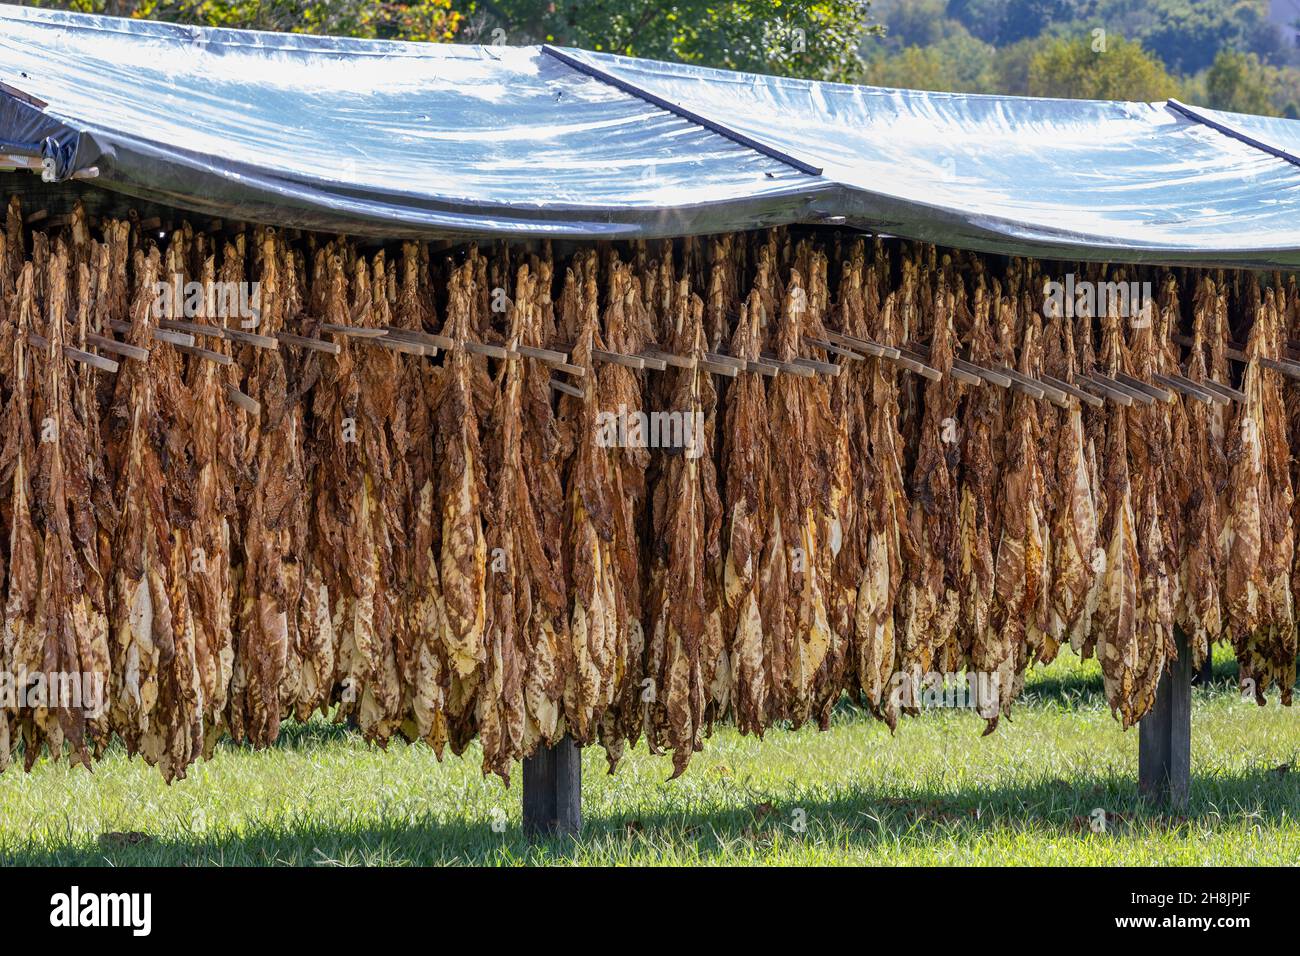 Trockengestelle für den Außenbereich mit Tabacco-Blättern, die im Nordosten von Tennessee, USA, zum Trocknen anstehen. Stockfoto